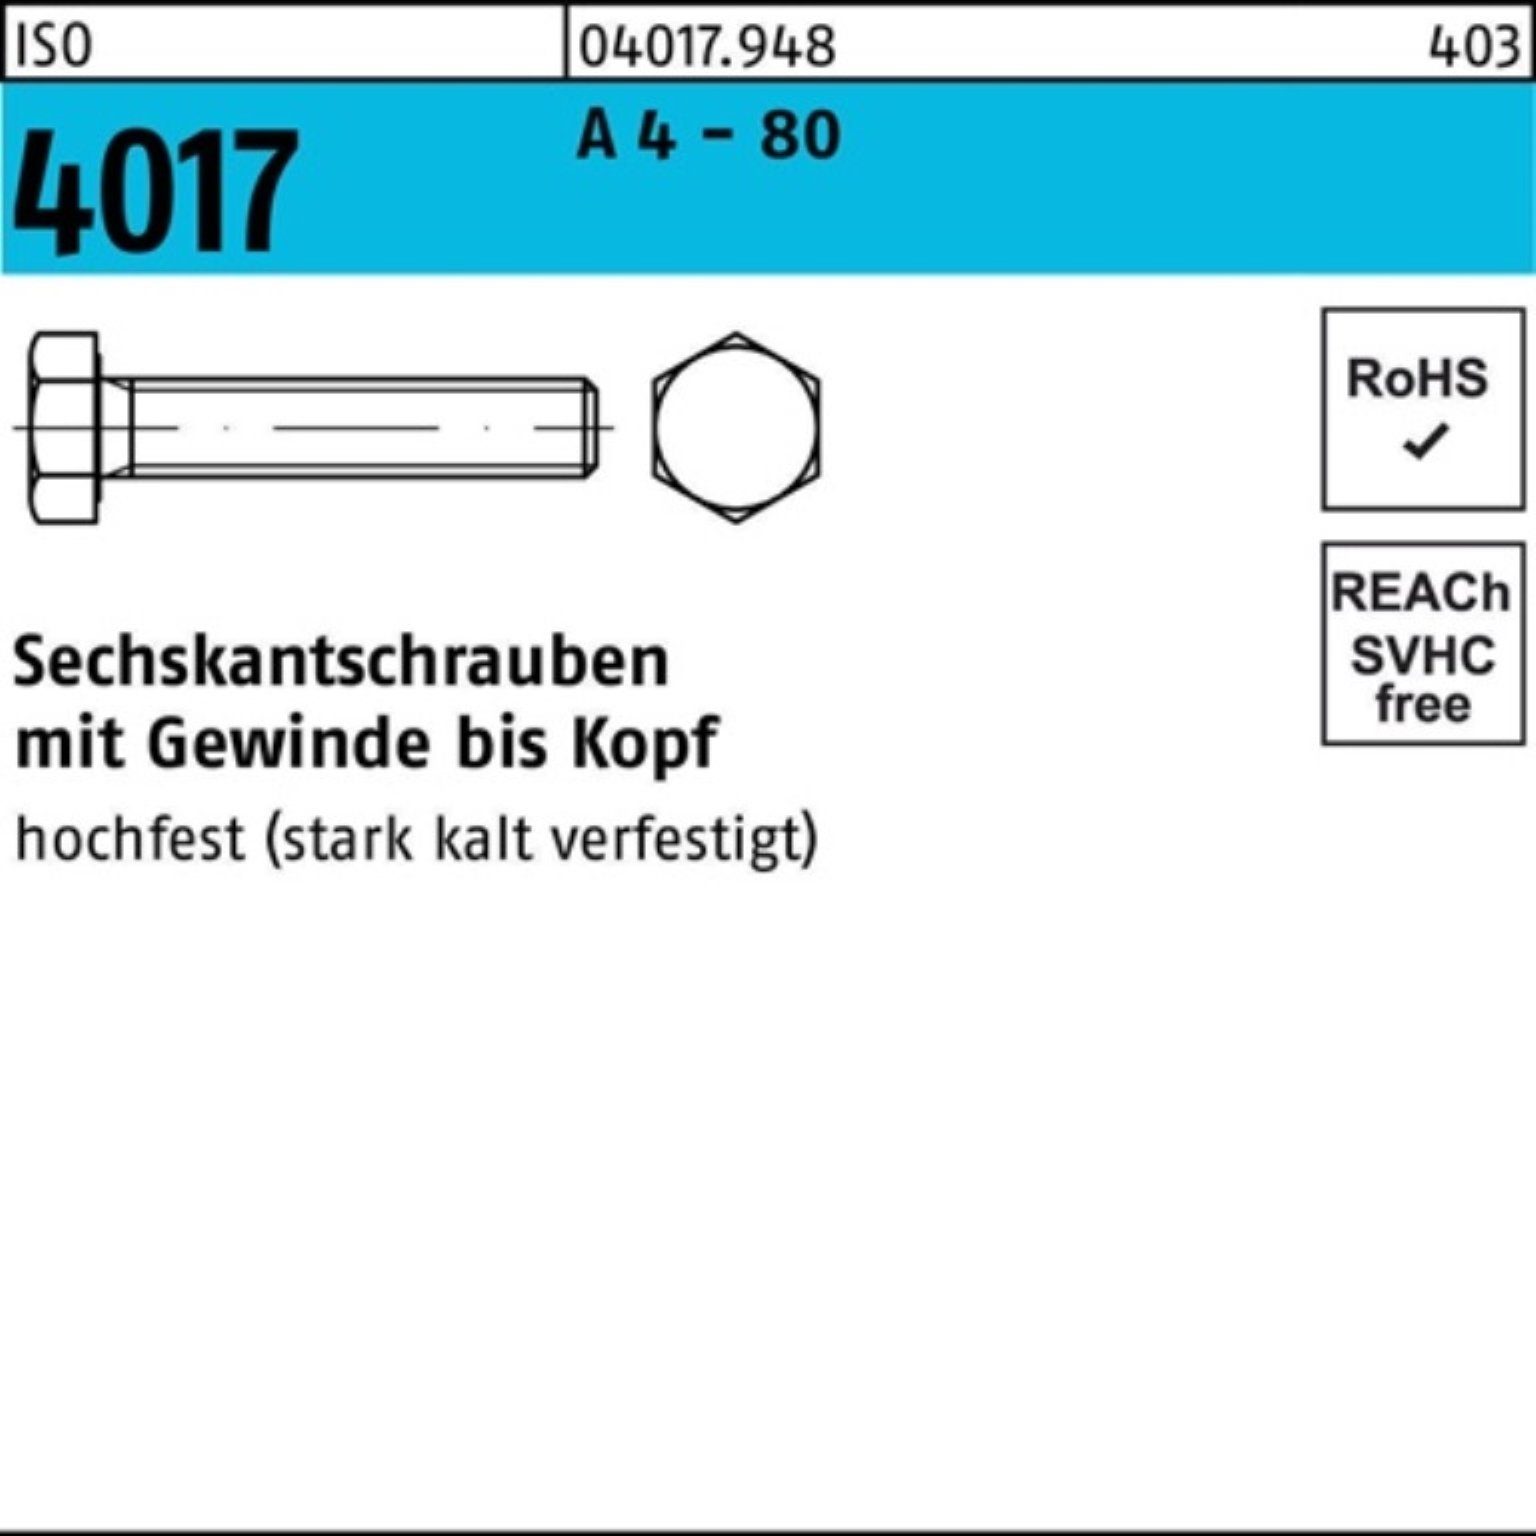 VG Sechskantschraube Stück Bufab 50 80 100er IS 50 Sechskantschraube M14x ISO - Pack 4017 A 4